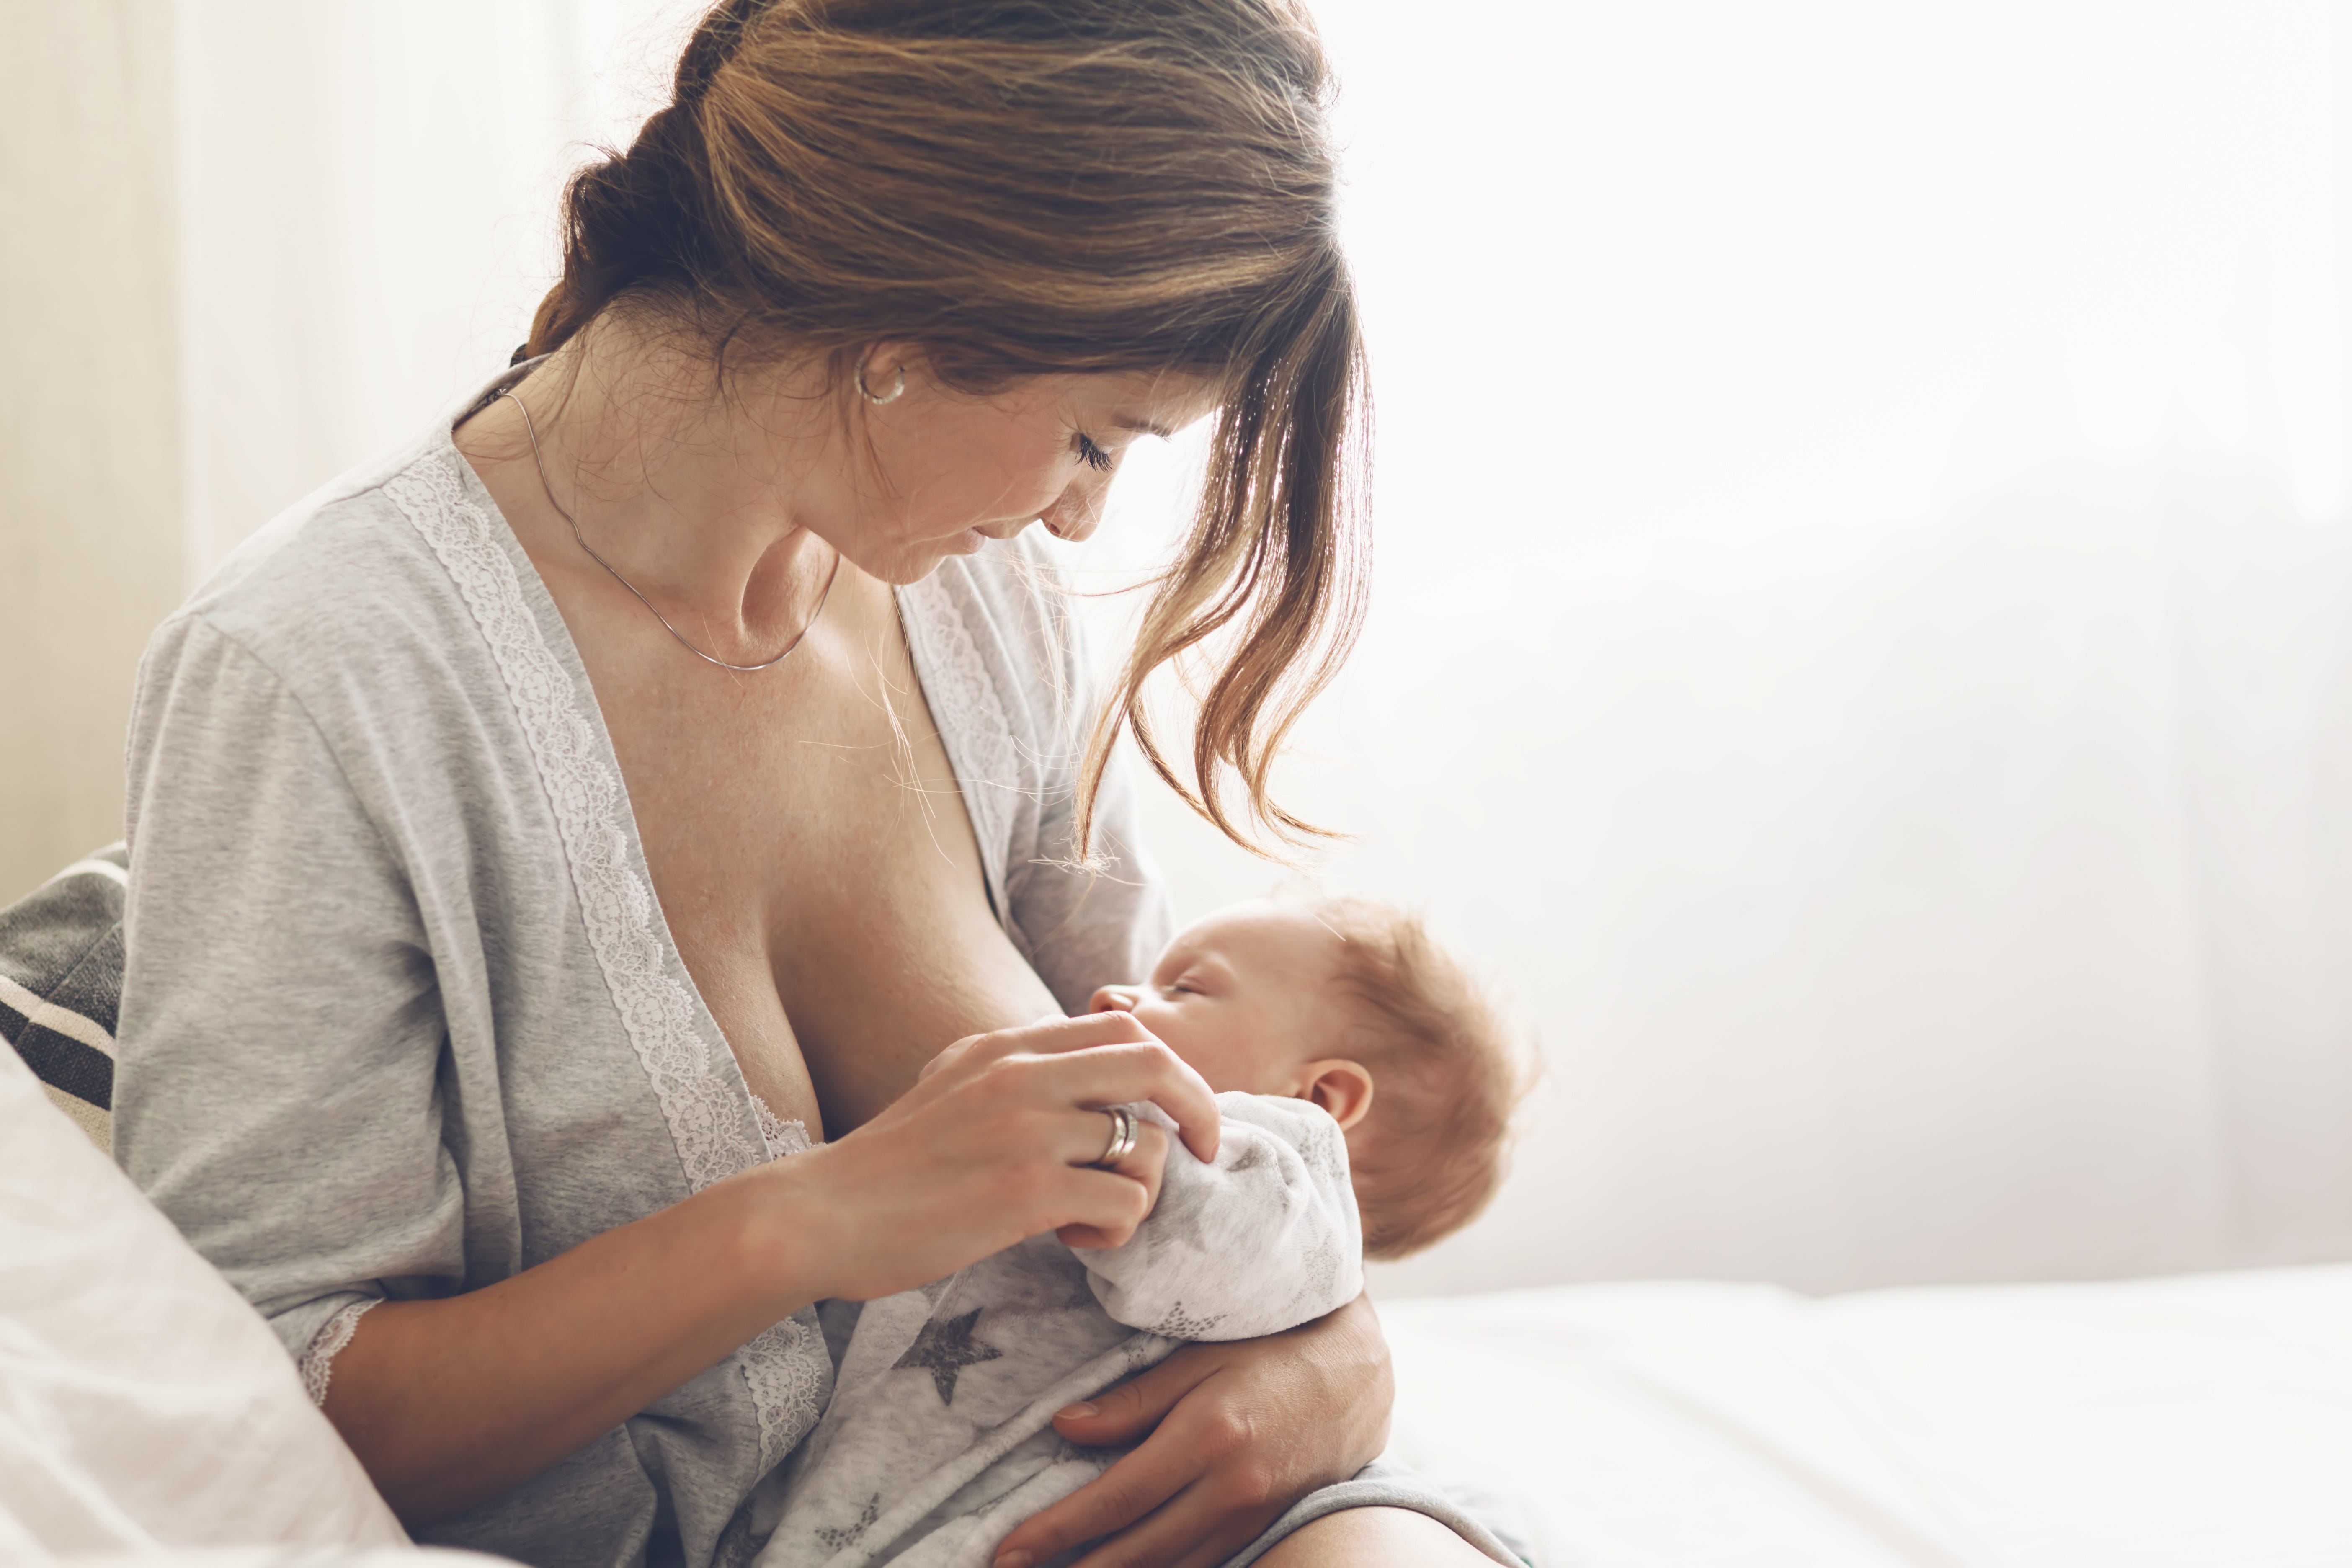 Pumping Breast Milk 101: Breastfeeding & Pumping